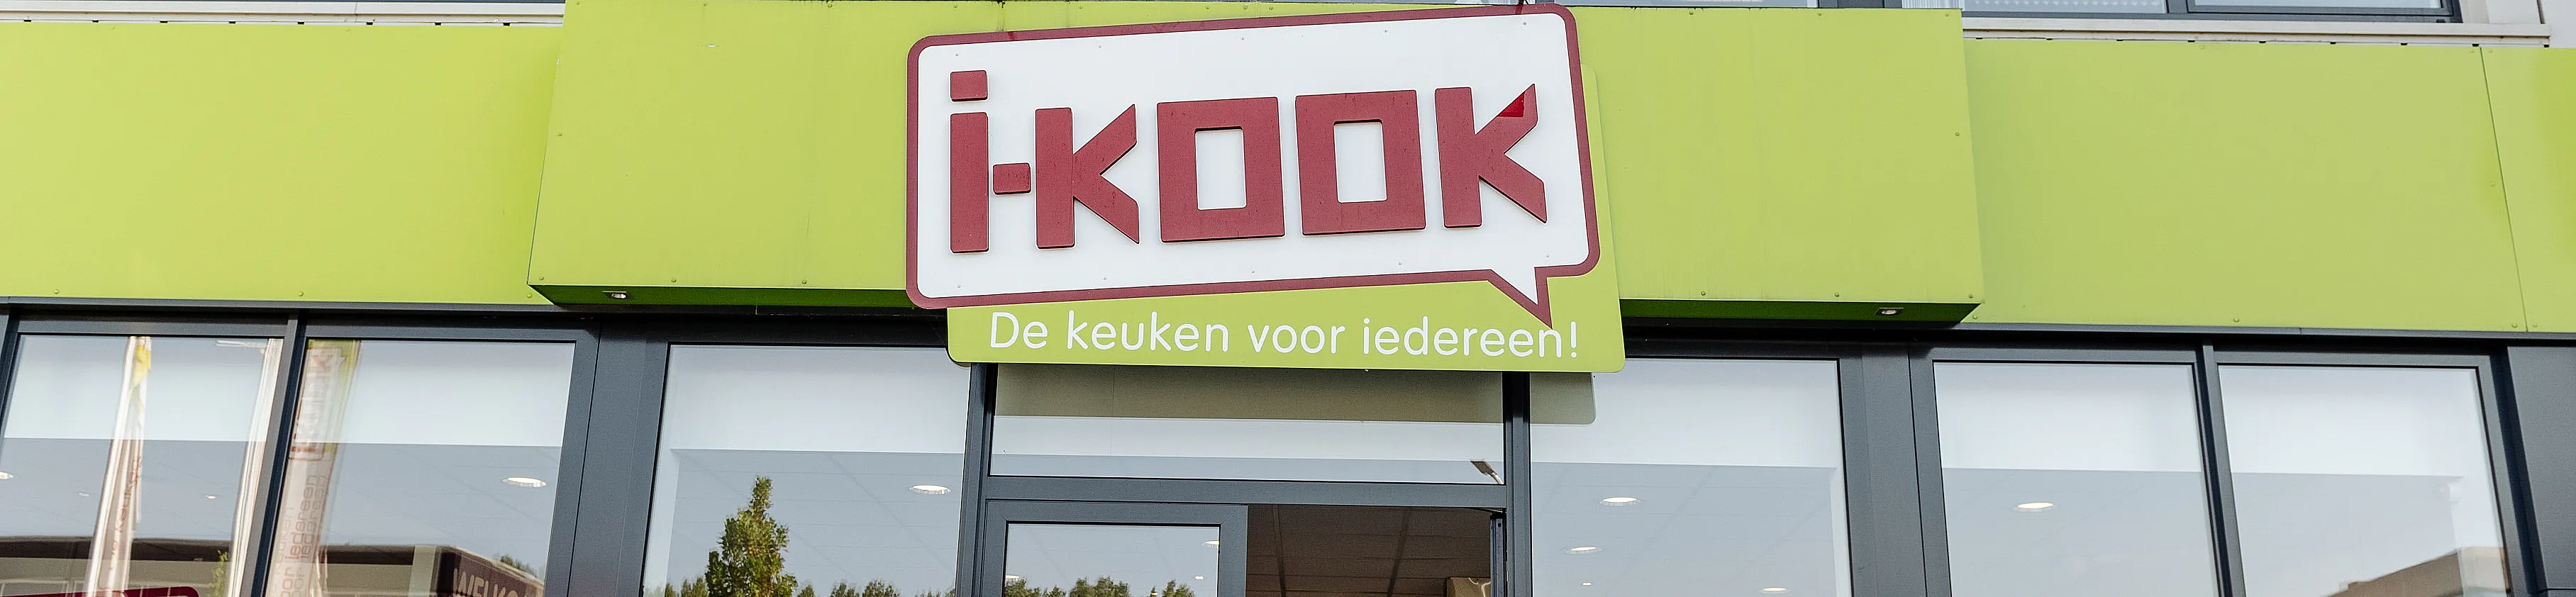 i-kook-capelle-aan-den-ijssel-top-banner